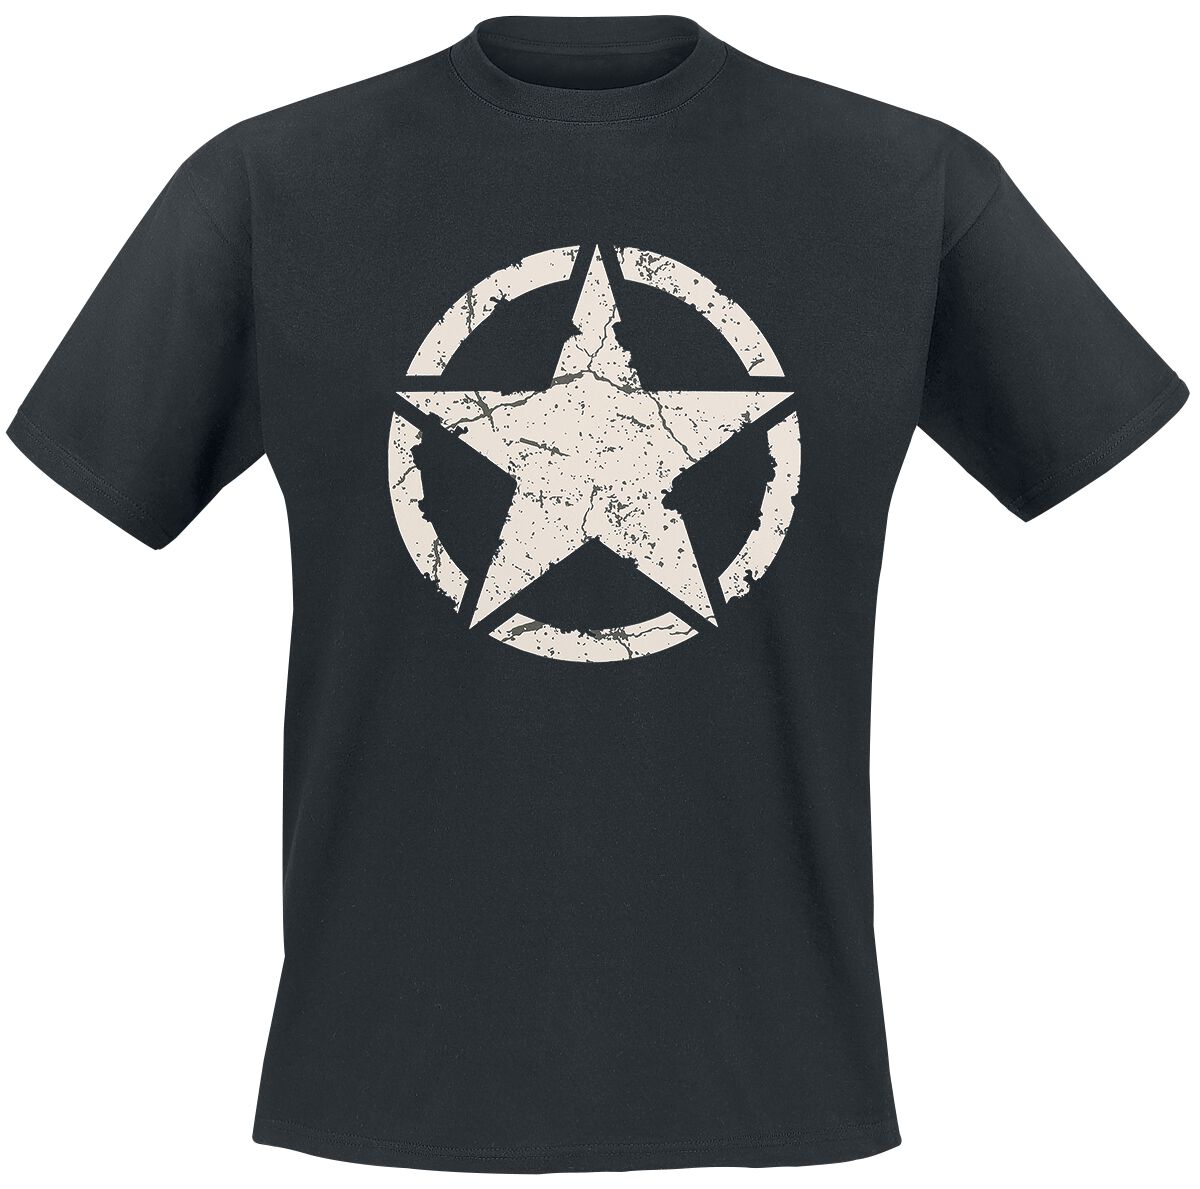 Gasoline Bandit - Rockabilly T-Shirt - Army Star - S bis 4XL - für Männer - Größe 3XL - schwarz